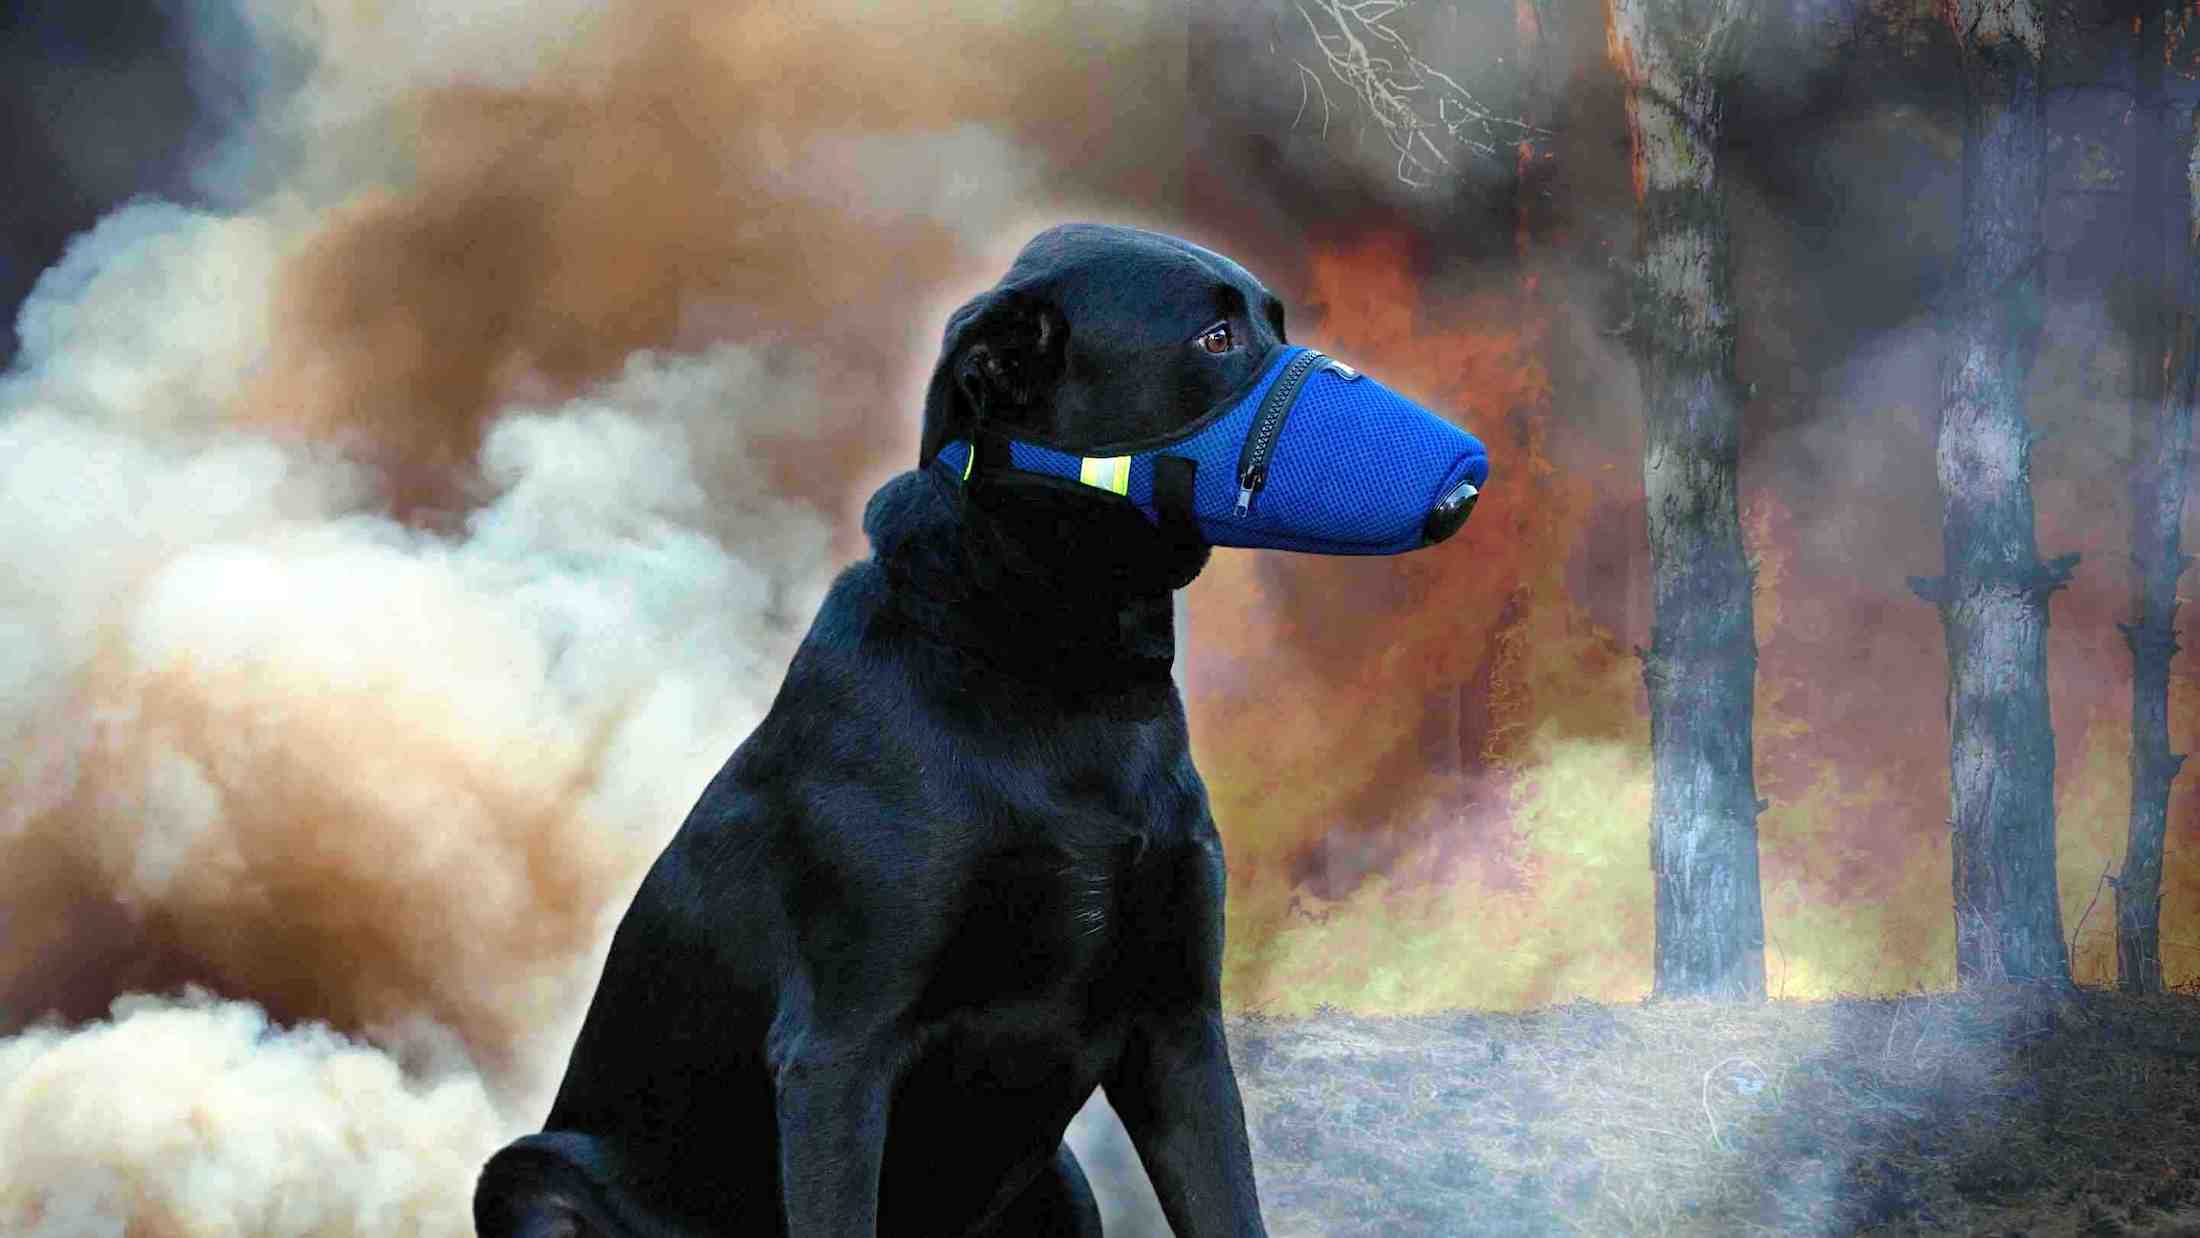 K9 Mask® Dog Air Filter Ansigtsmaske til hunde til røg, støv, aske, pollen, tåregas, røde tidevand, kemikalier, tåregas, bakterier, allergener